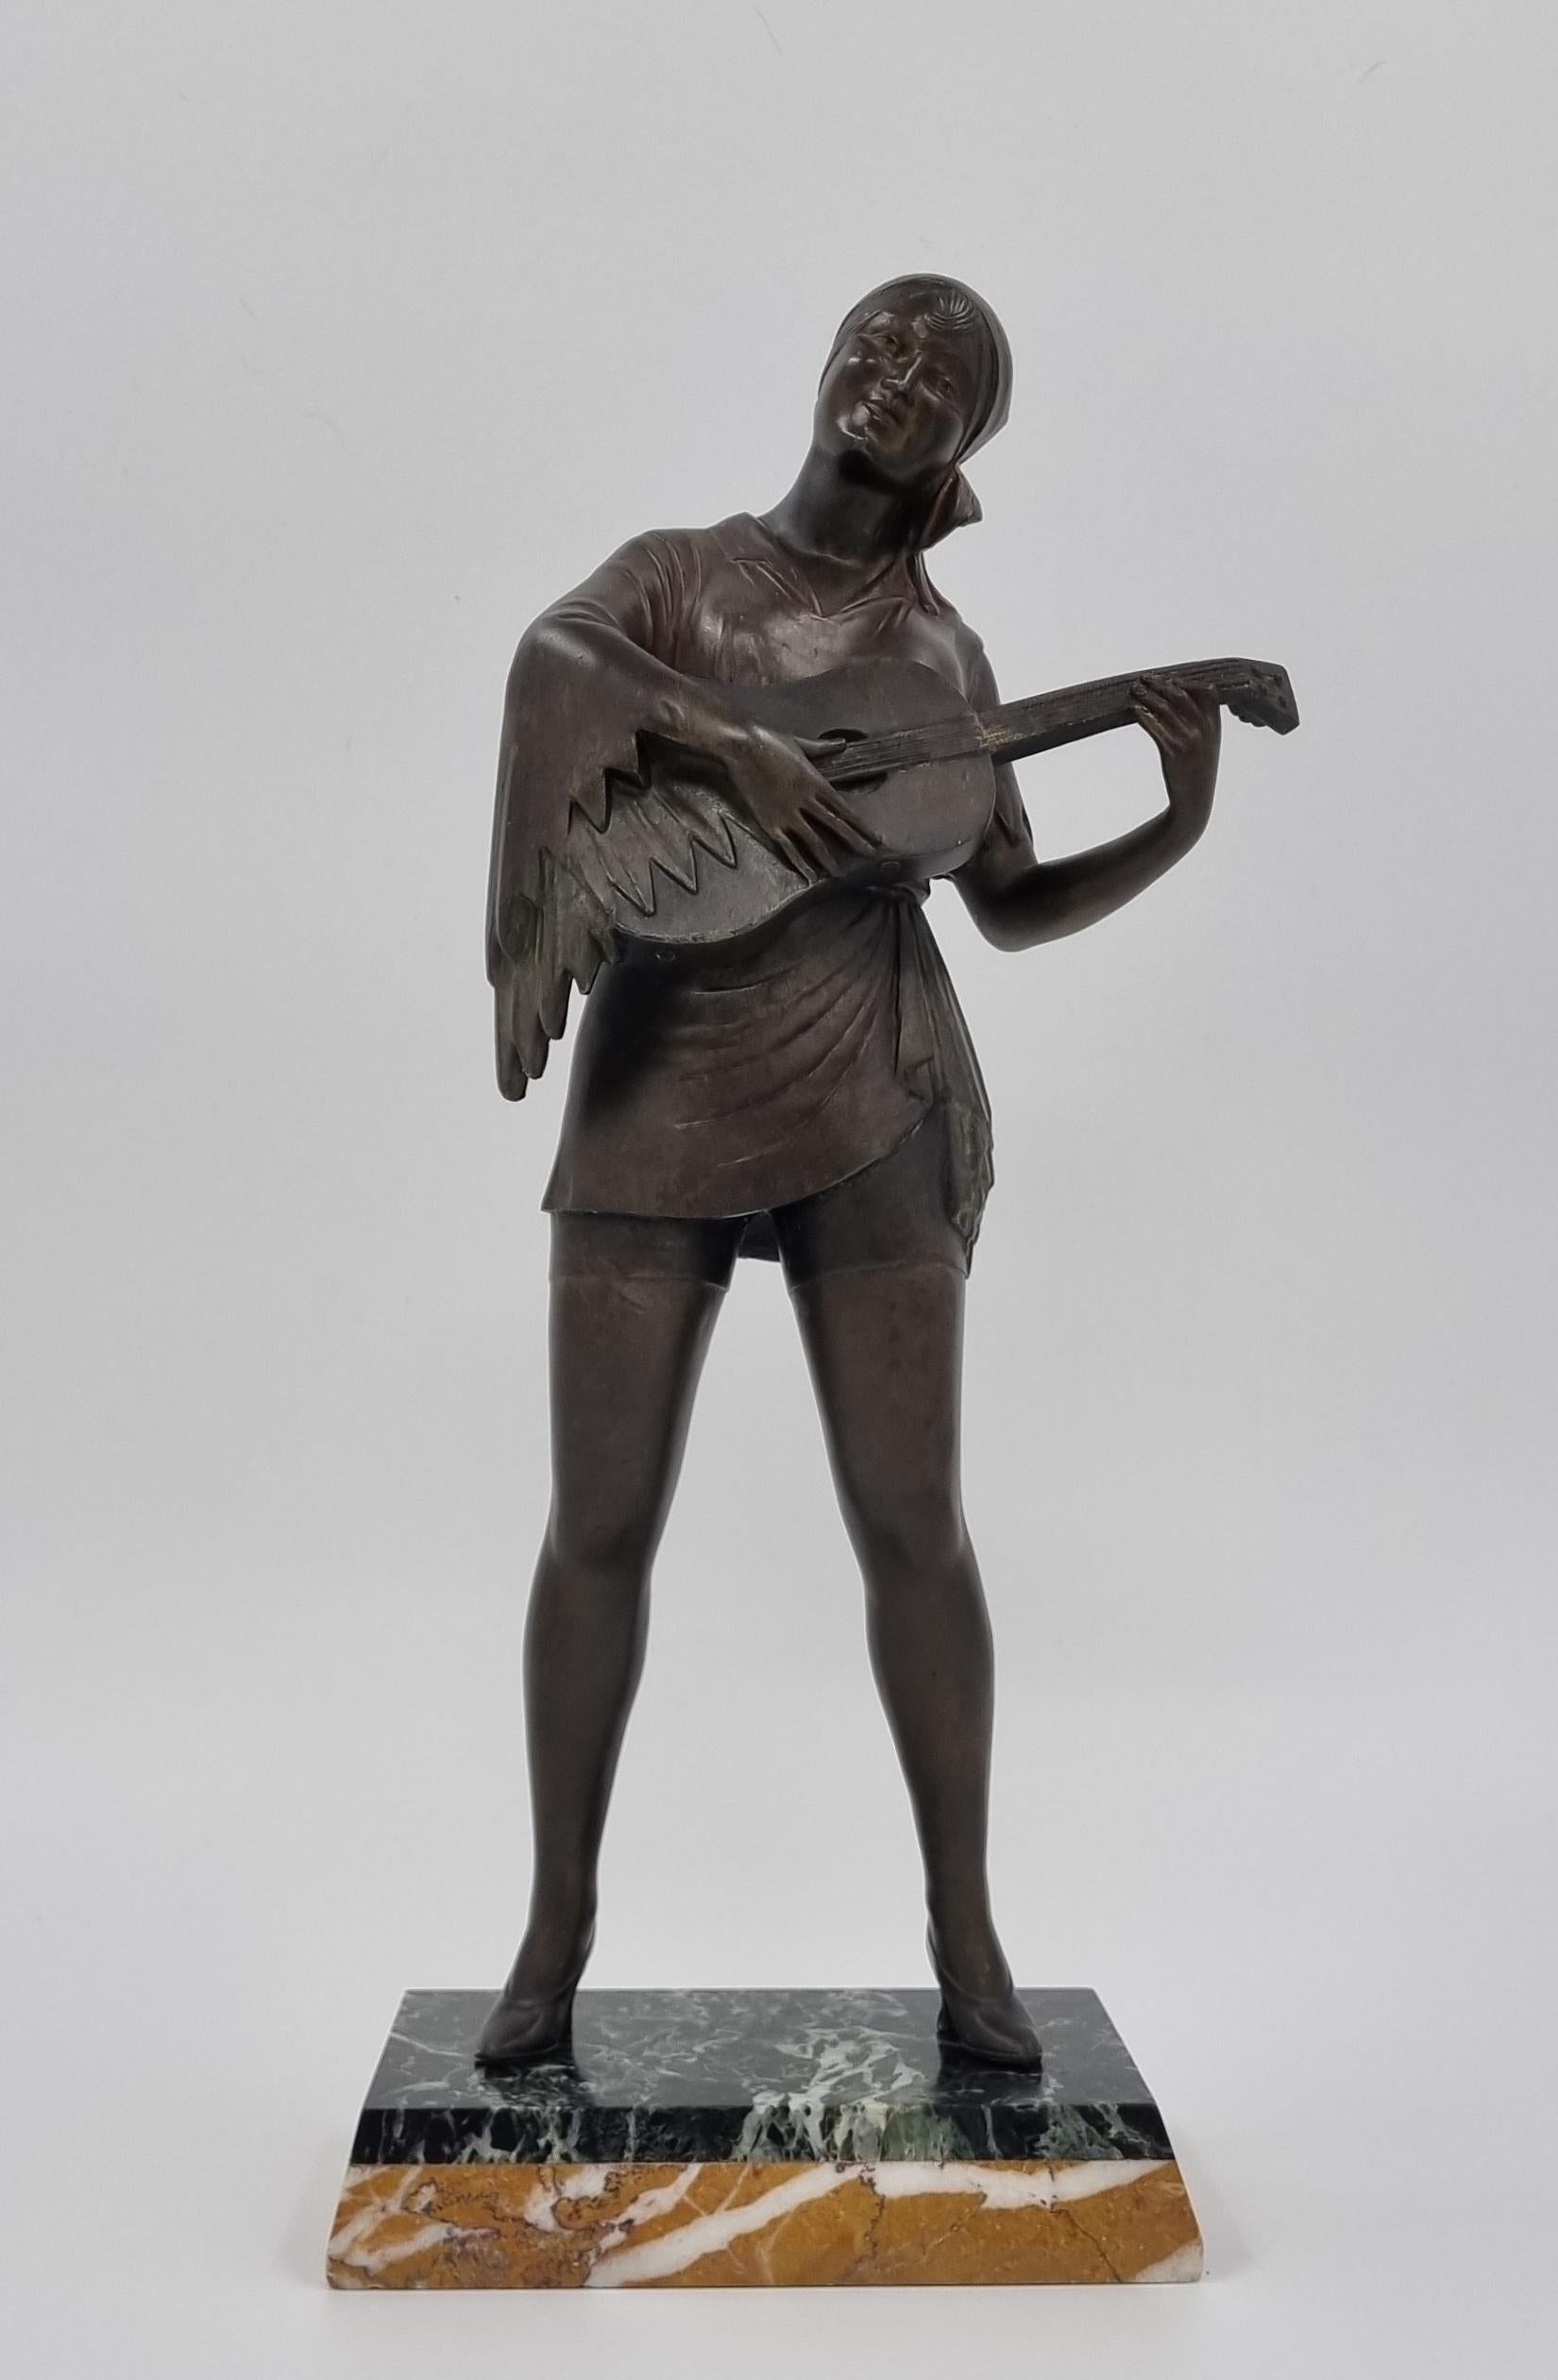 Große Art-Déco-Skulptur einer Gitarre spielenden Dame, gegossen in kalt bemaltem Zinn, dargestellt in einem fließenden Zigeunerkostüm, bei dem jede Falte und Bewegung perfekt eingefangen ist. Alle sind so gestaltet, dass sie einen Eindruck von dem